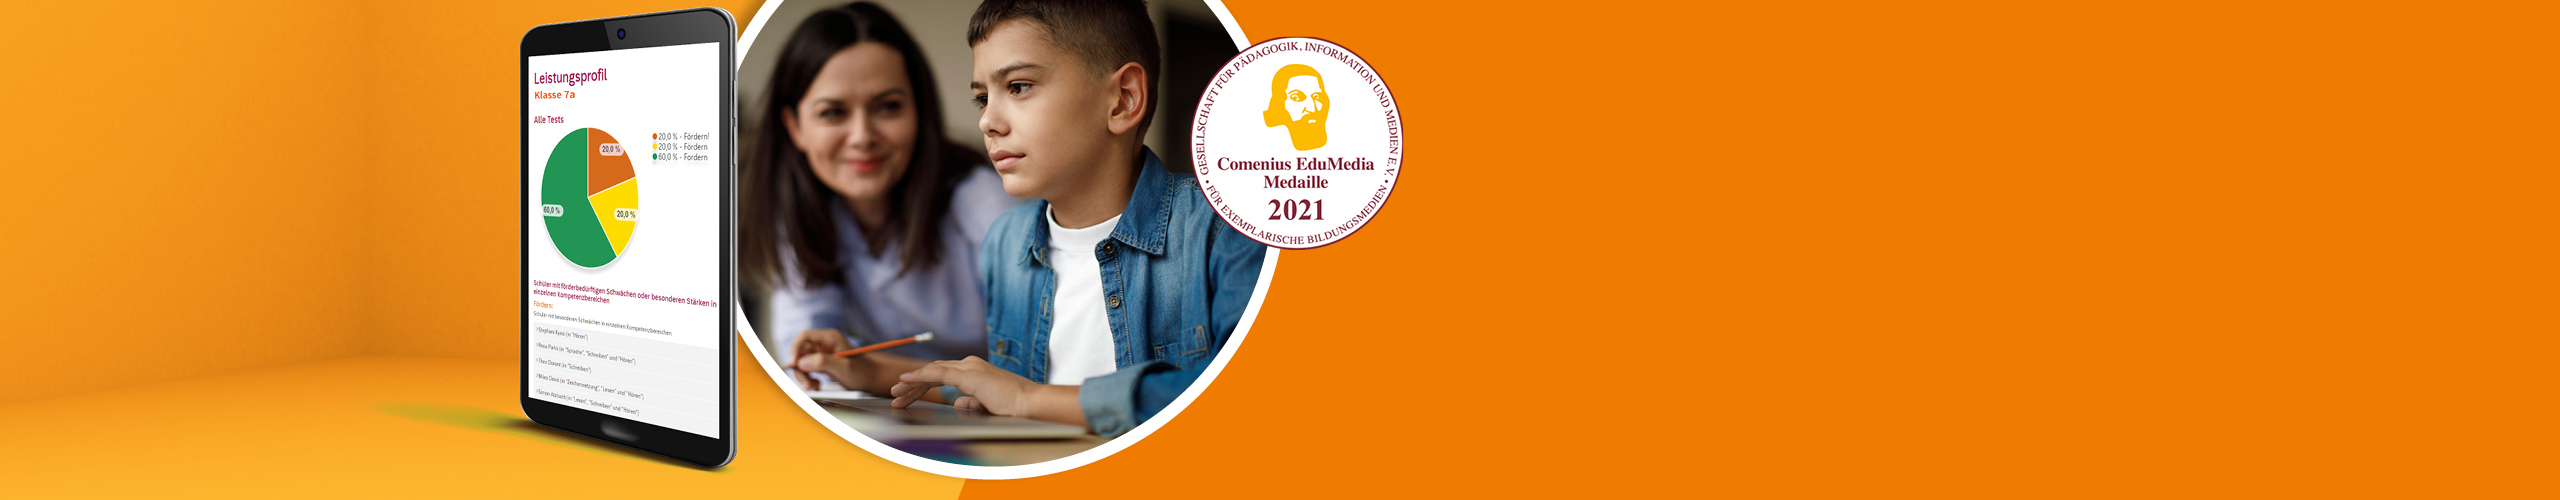 Tablet mit Analyse, Mutter mit konzentriertem Schüler, Comenius EduMedia Medaille 2021